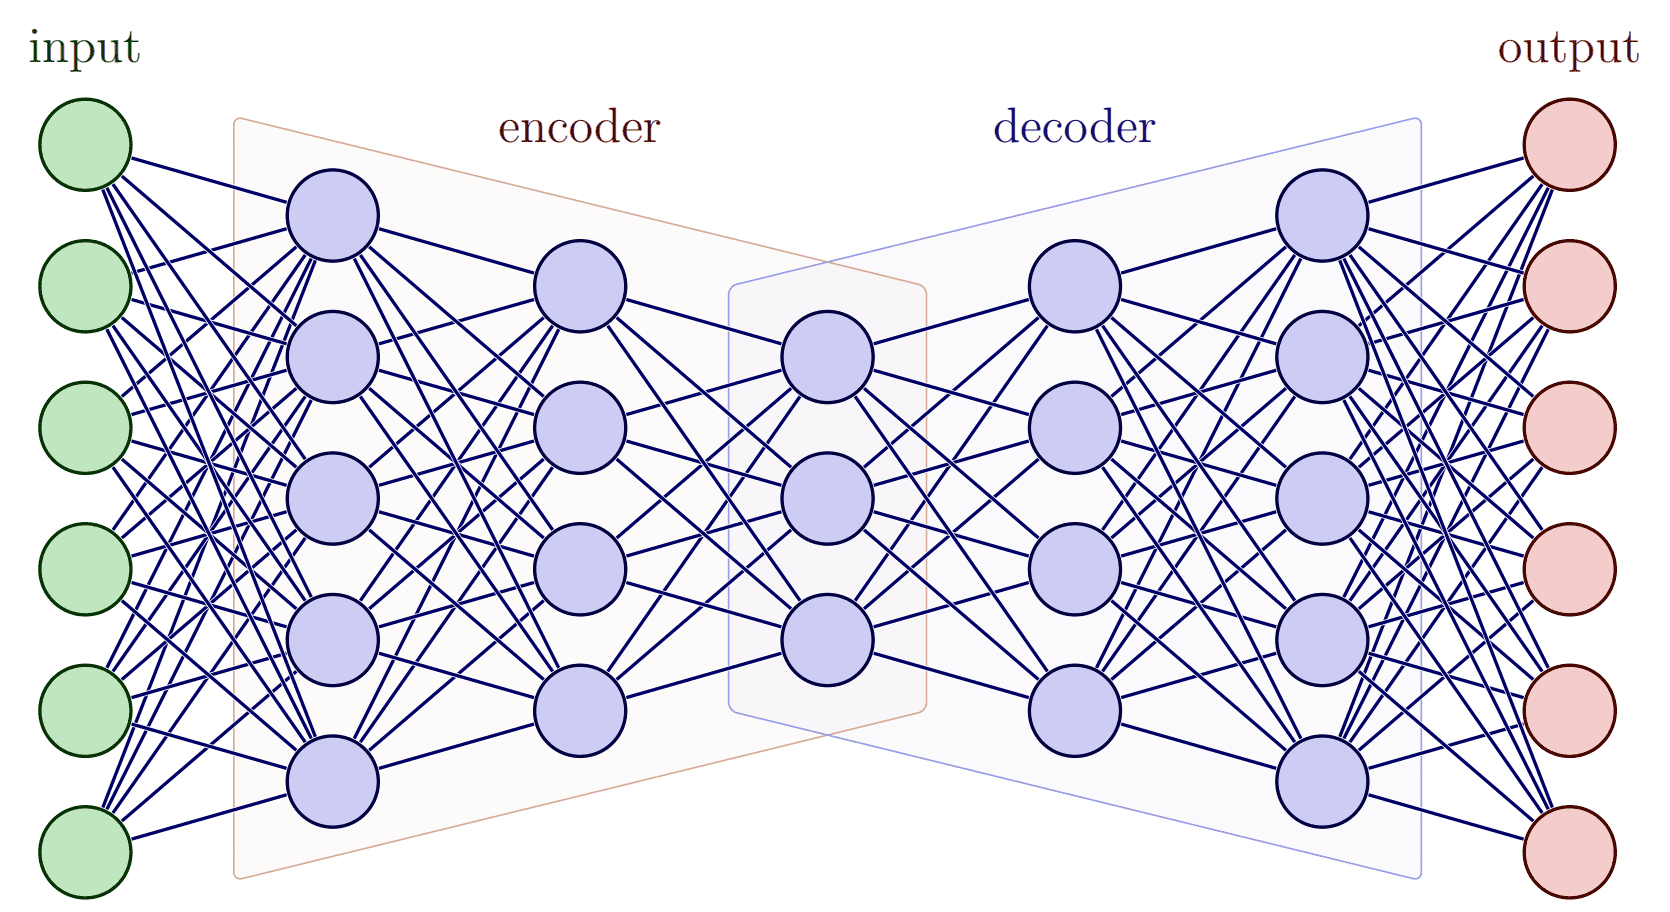 TikZ 绘制神经网络的几个示意图